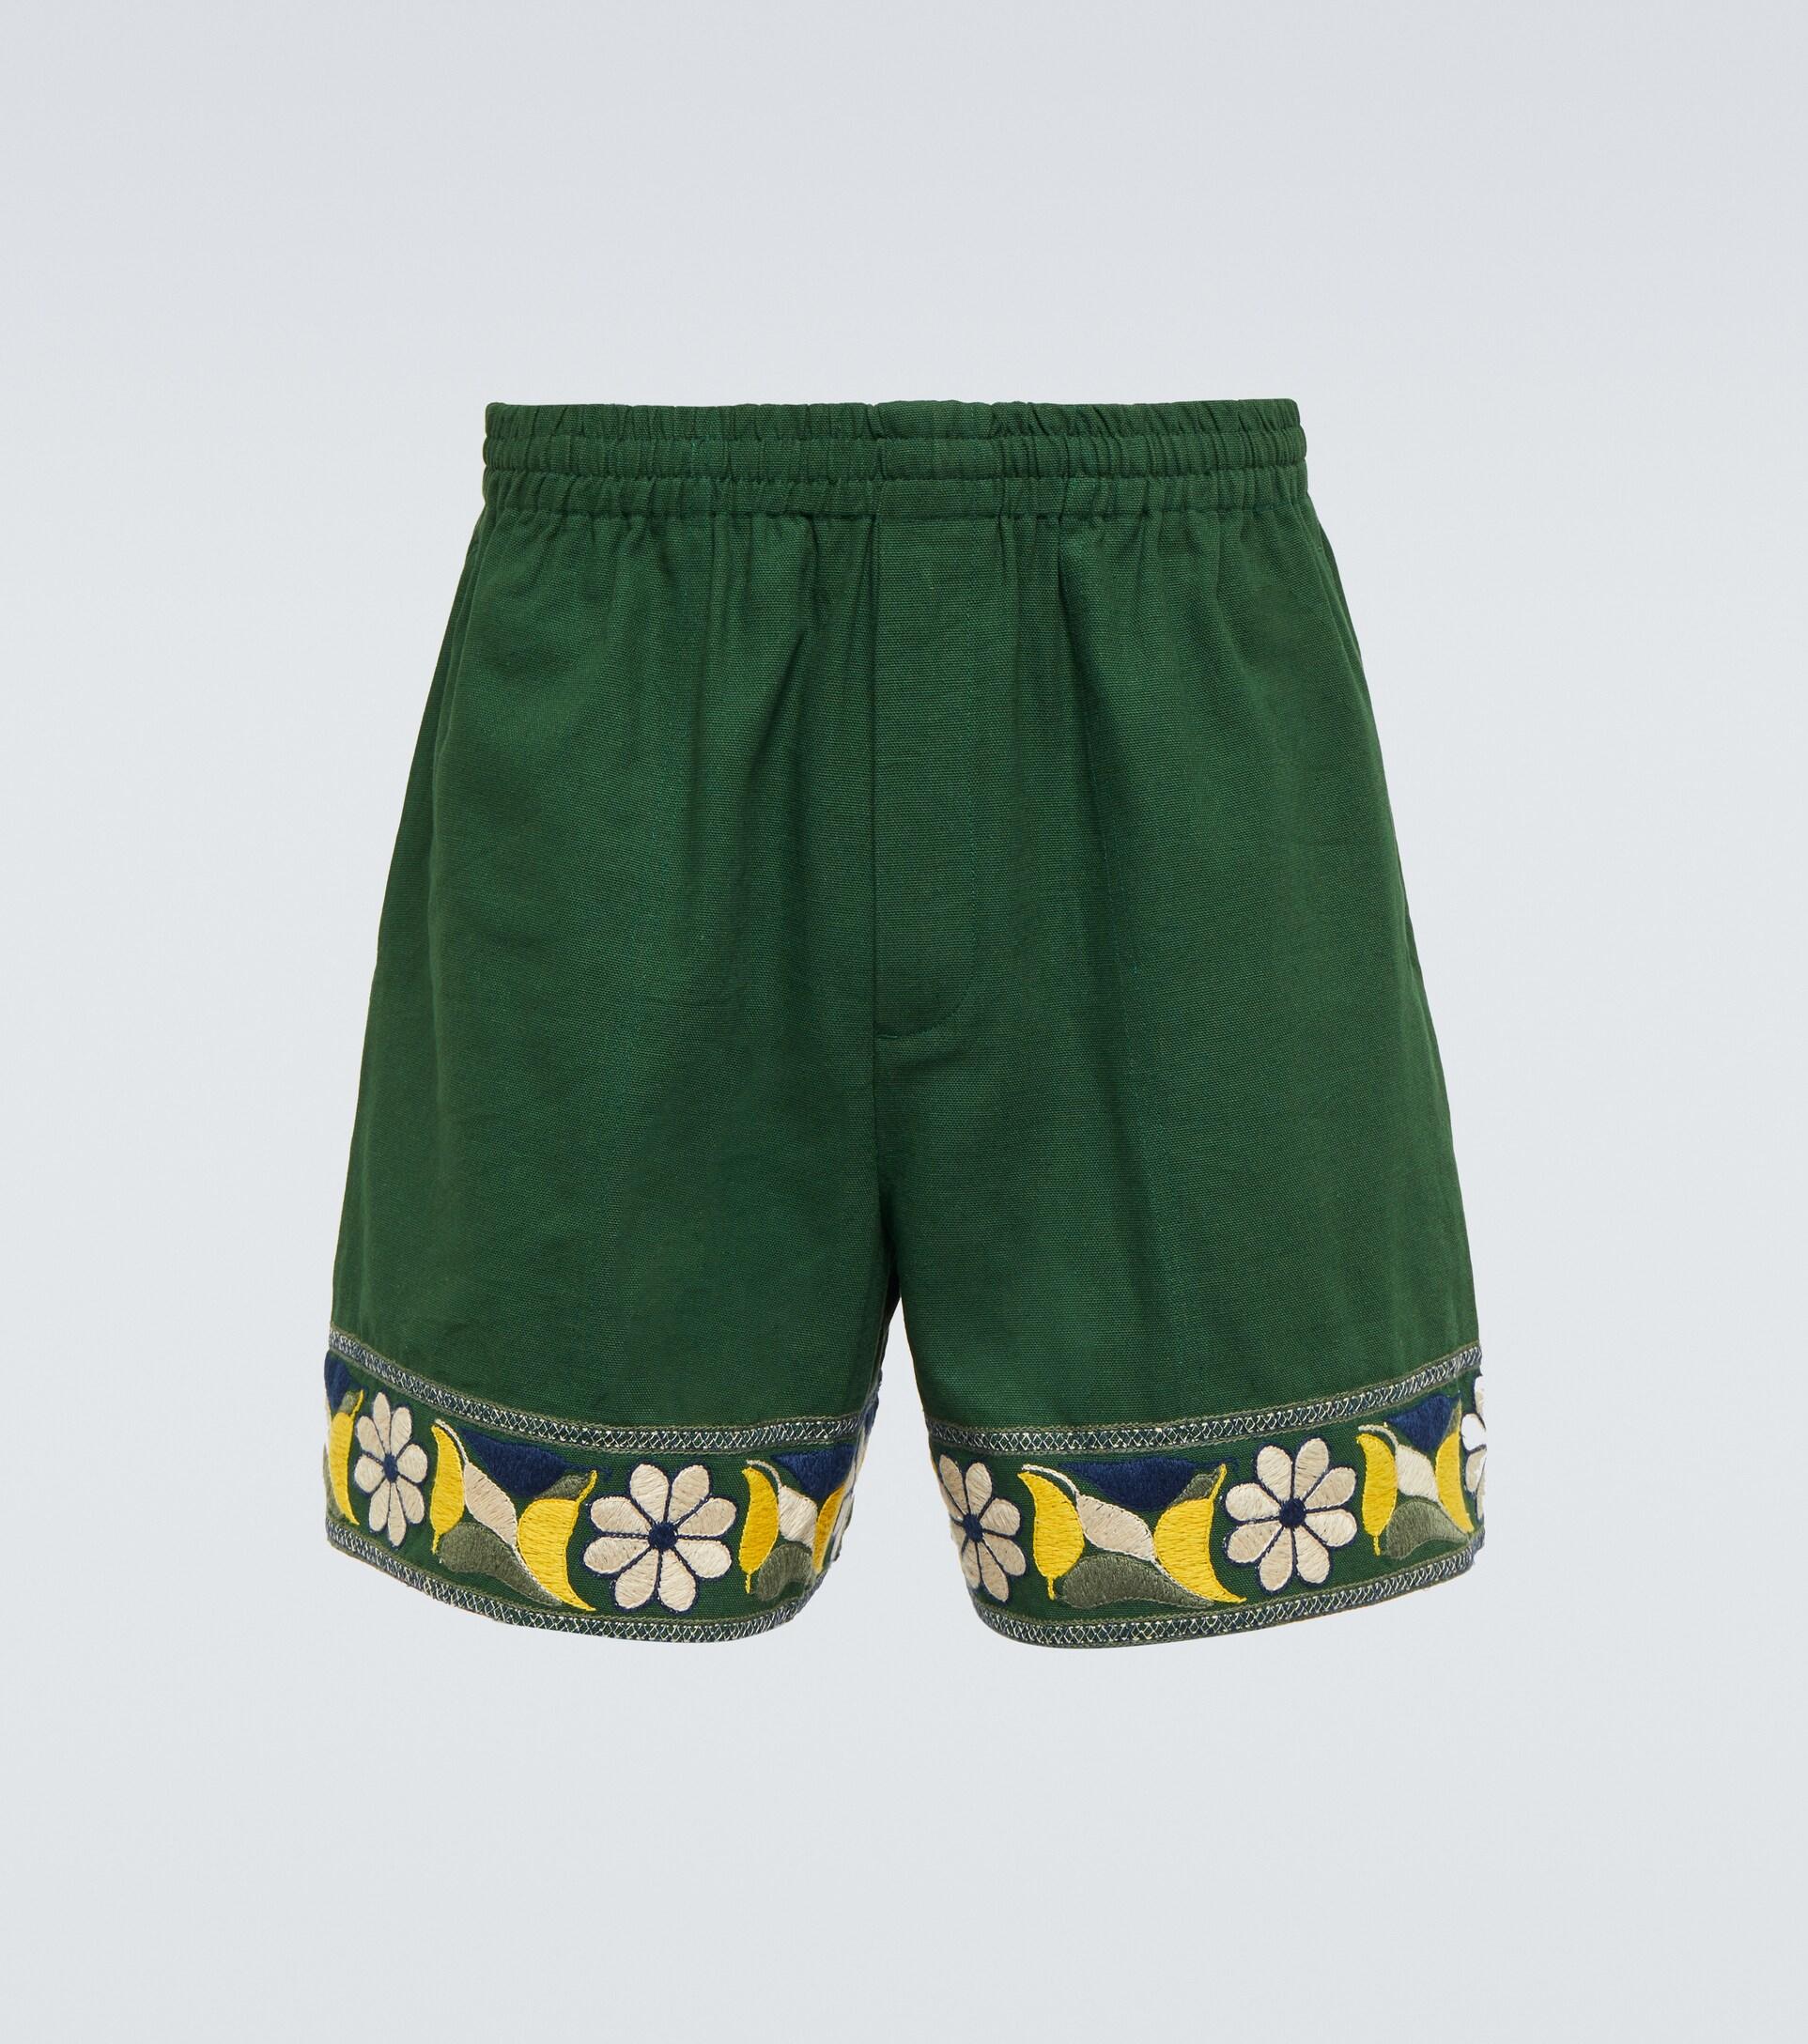 Shorts de algodón bordados Bode de Algodón de color Verde para hombre Hombre Ropa de Pantalones cortos 